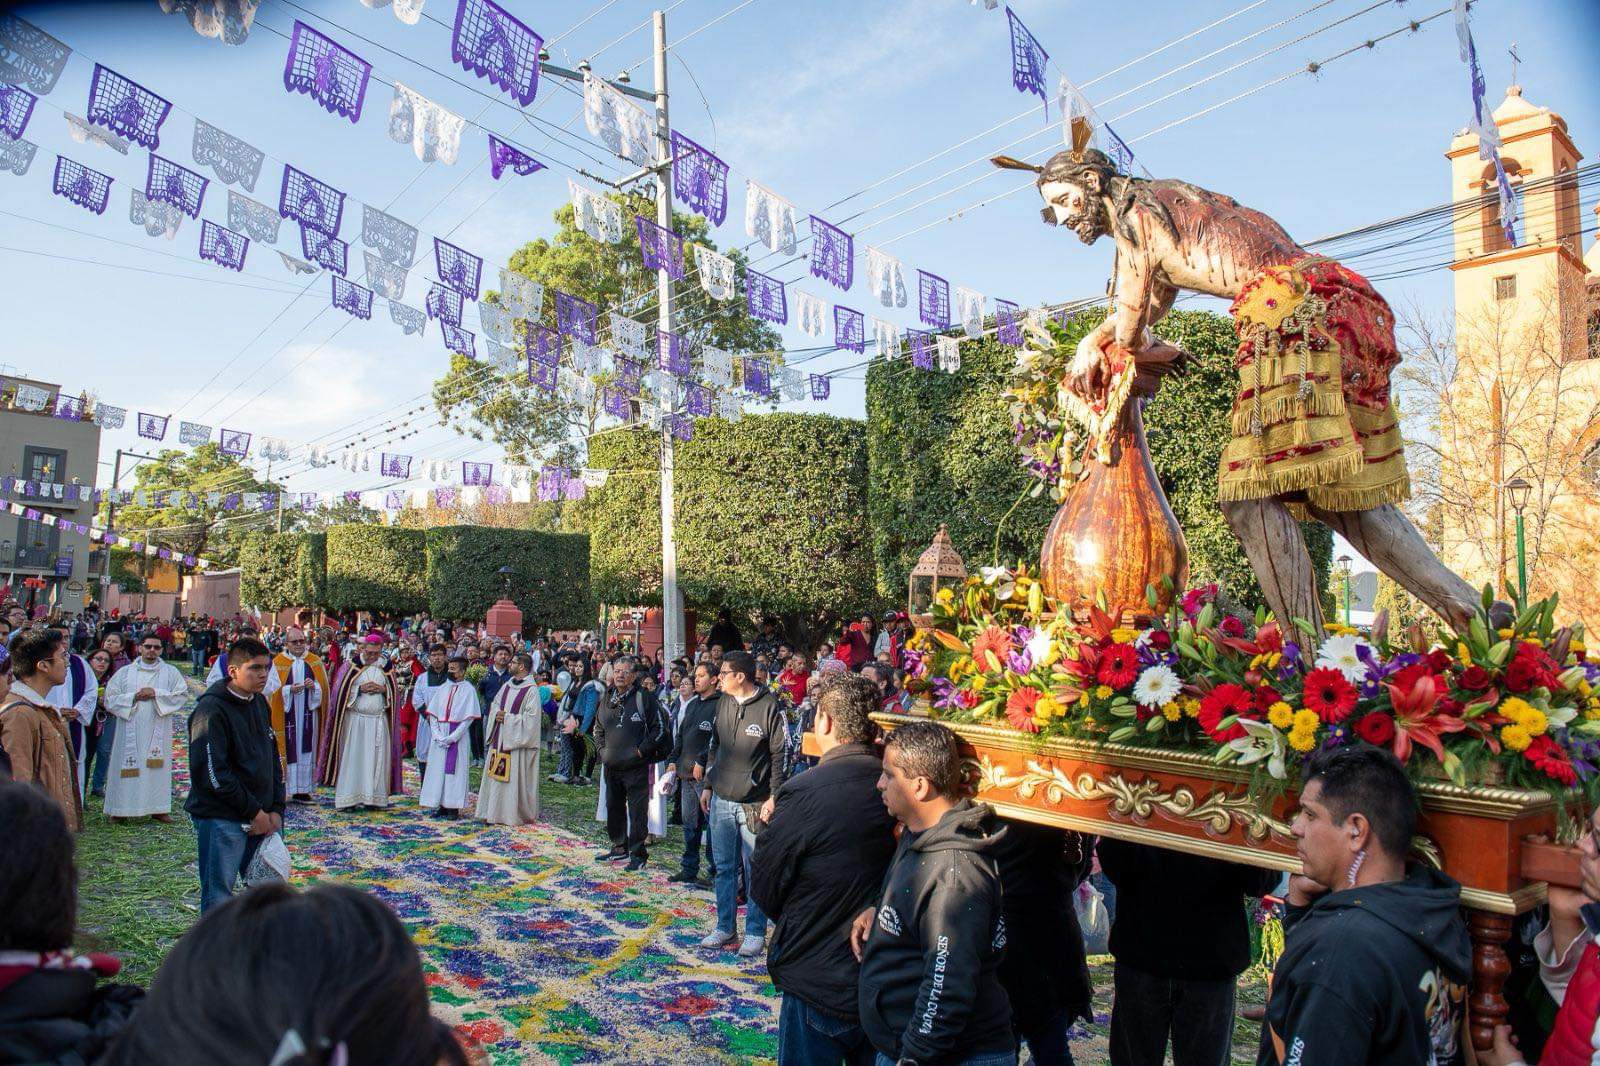 ¡Vive Semana Santa!, en San Miguel de Allende